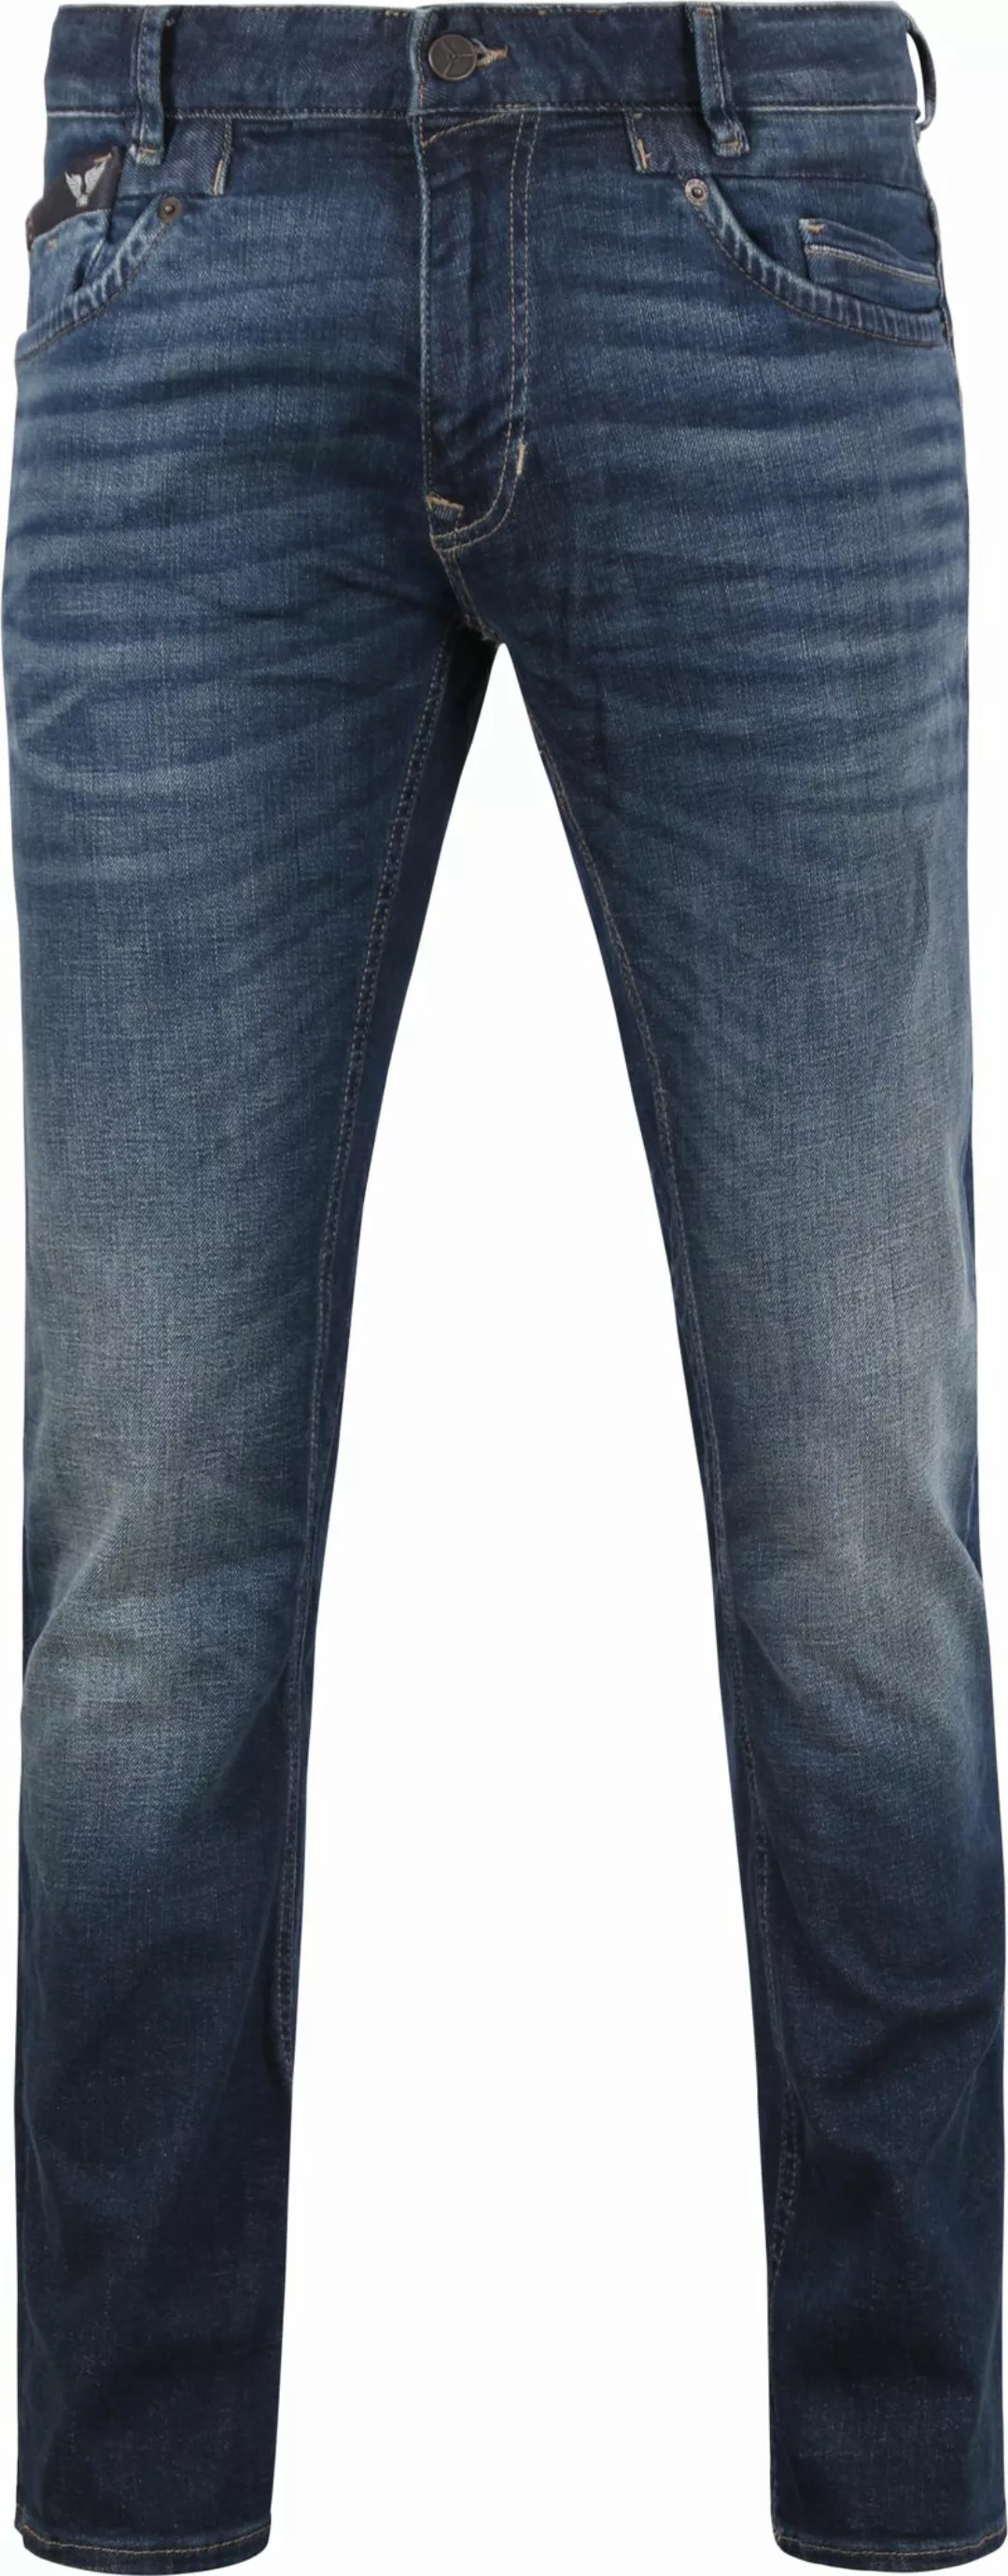 PME Legend Commander 3.0 Jeans Blau DBF - Größe W 36 - L 32 günstig online kaufen